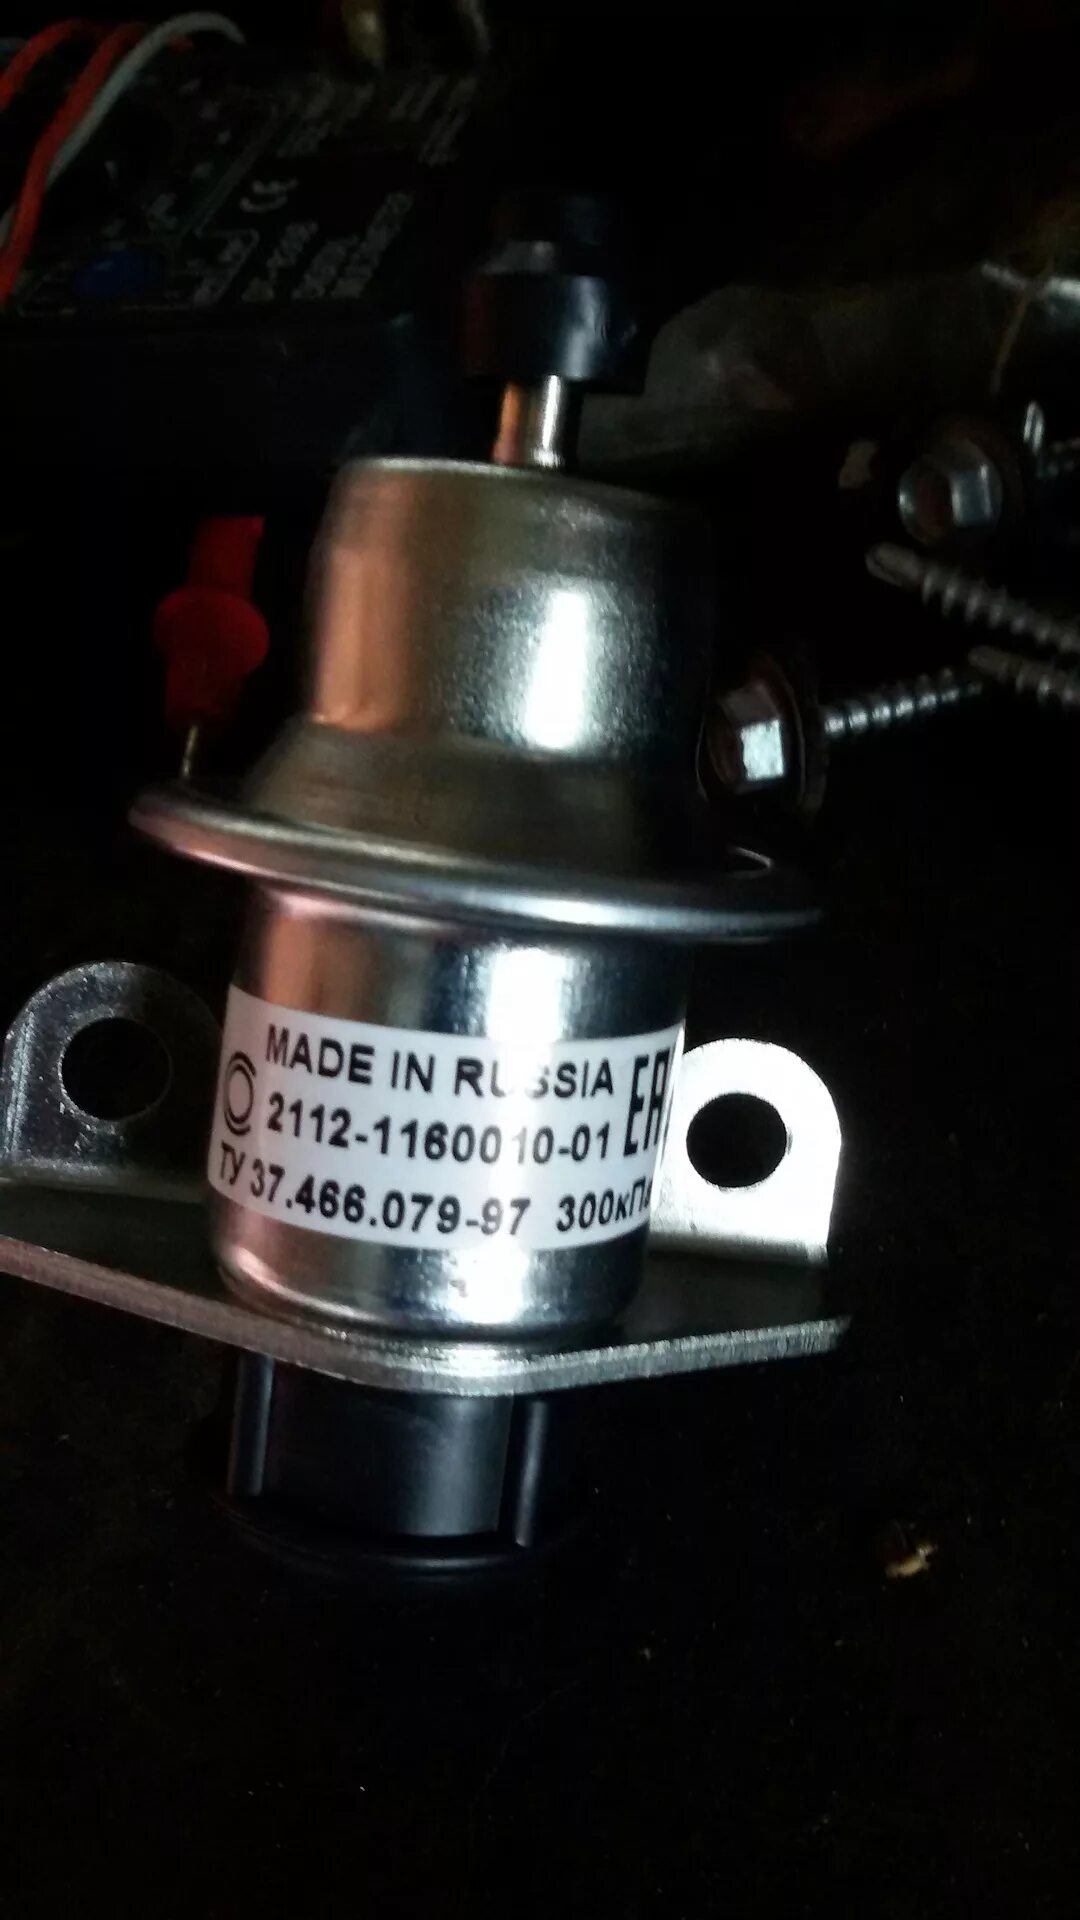 Топливный клапан ваз 2115. Датчик регулятора давления топлива ВАЗ 2114. Обратный топливный клапан ВАЗ 2115. Обратный клапан ВАЗ 2115. Обратный клапан ВАЗ 2115 инжектор 8 клапанов.